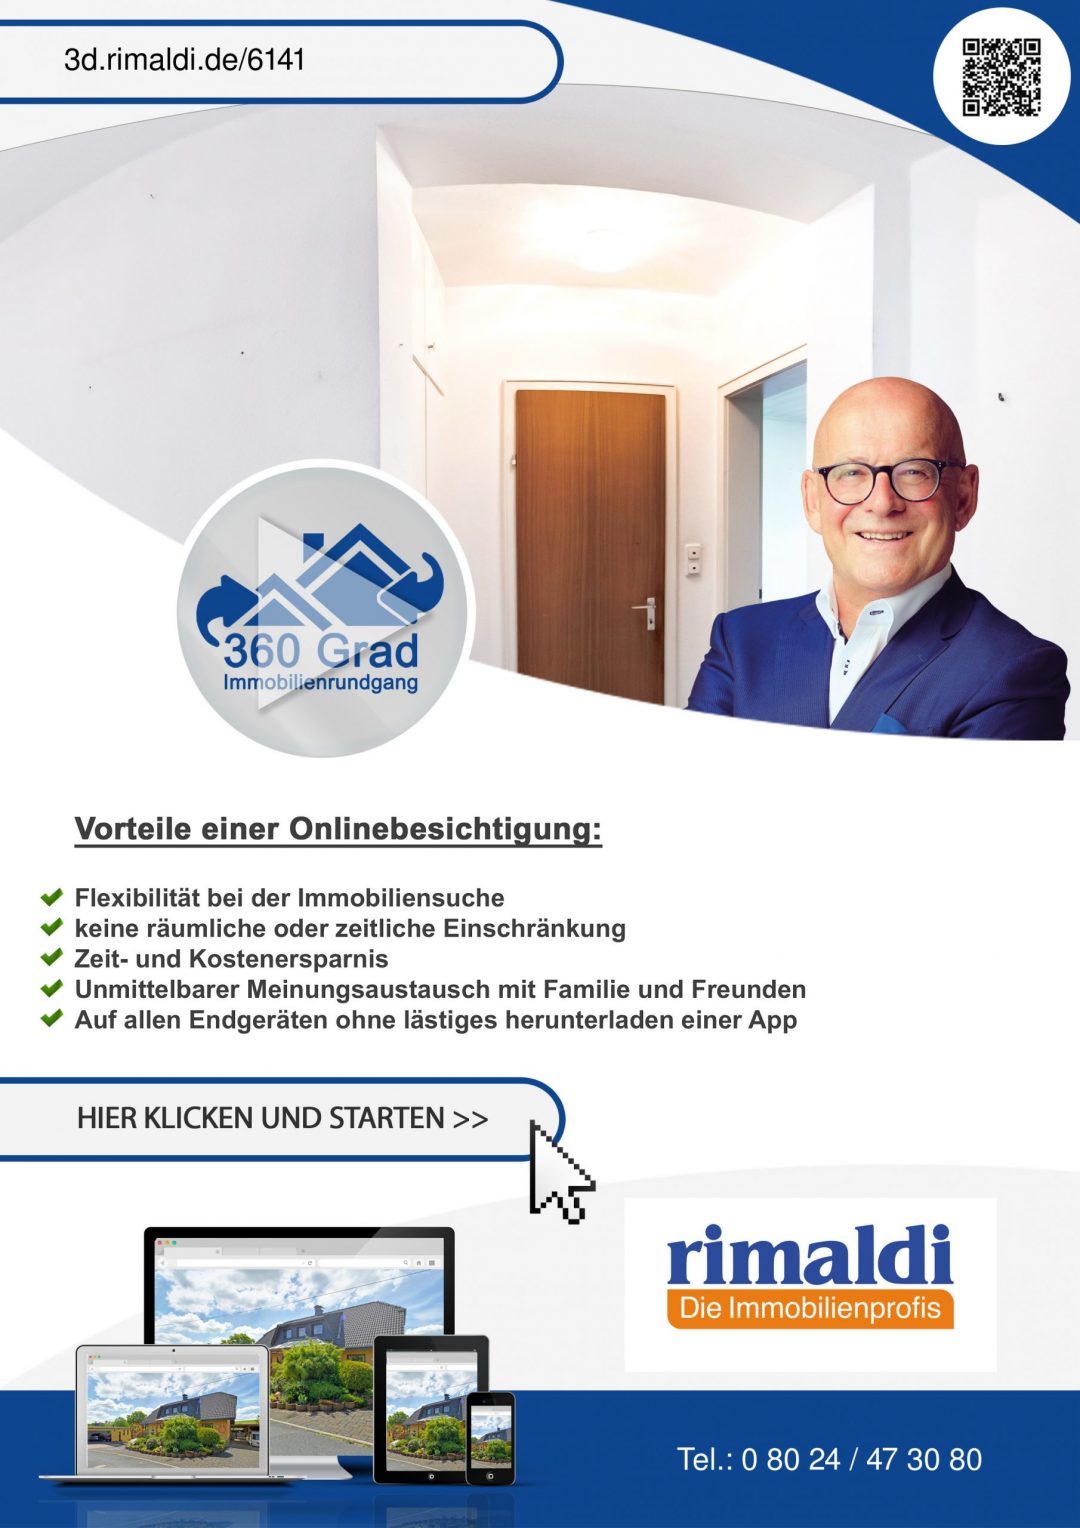 Matthias Wandl Immobilienmakler in München-Pasing - Verkauft von Matthias Wandl, Immobilienmakler in München